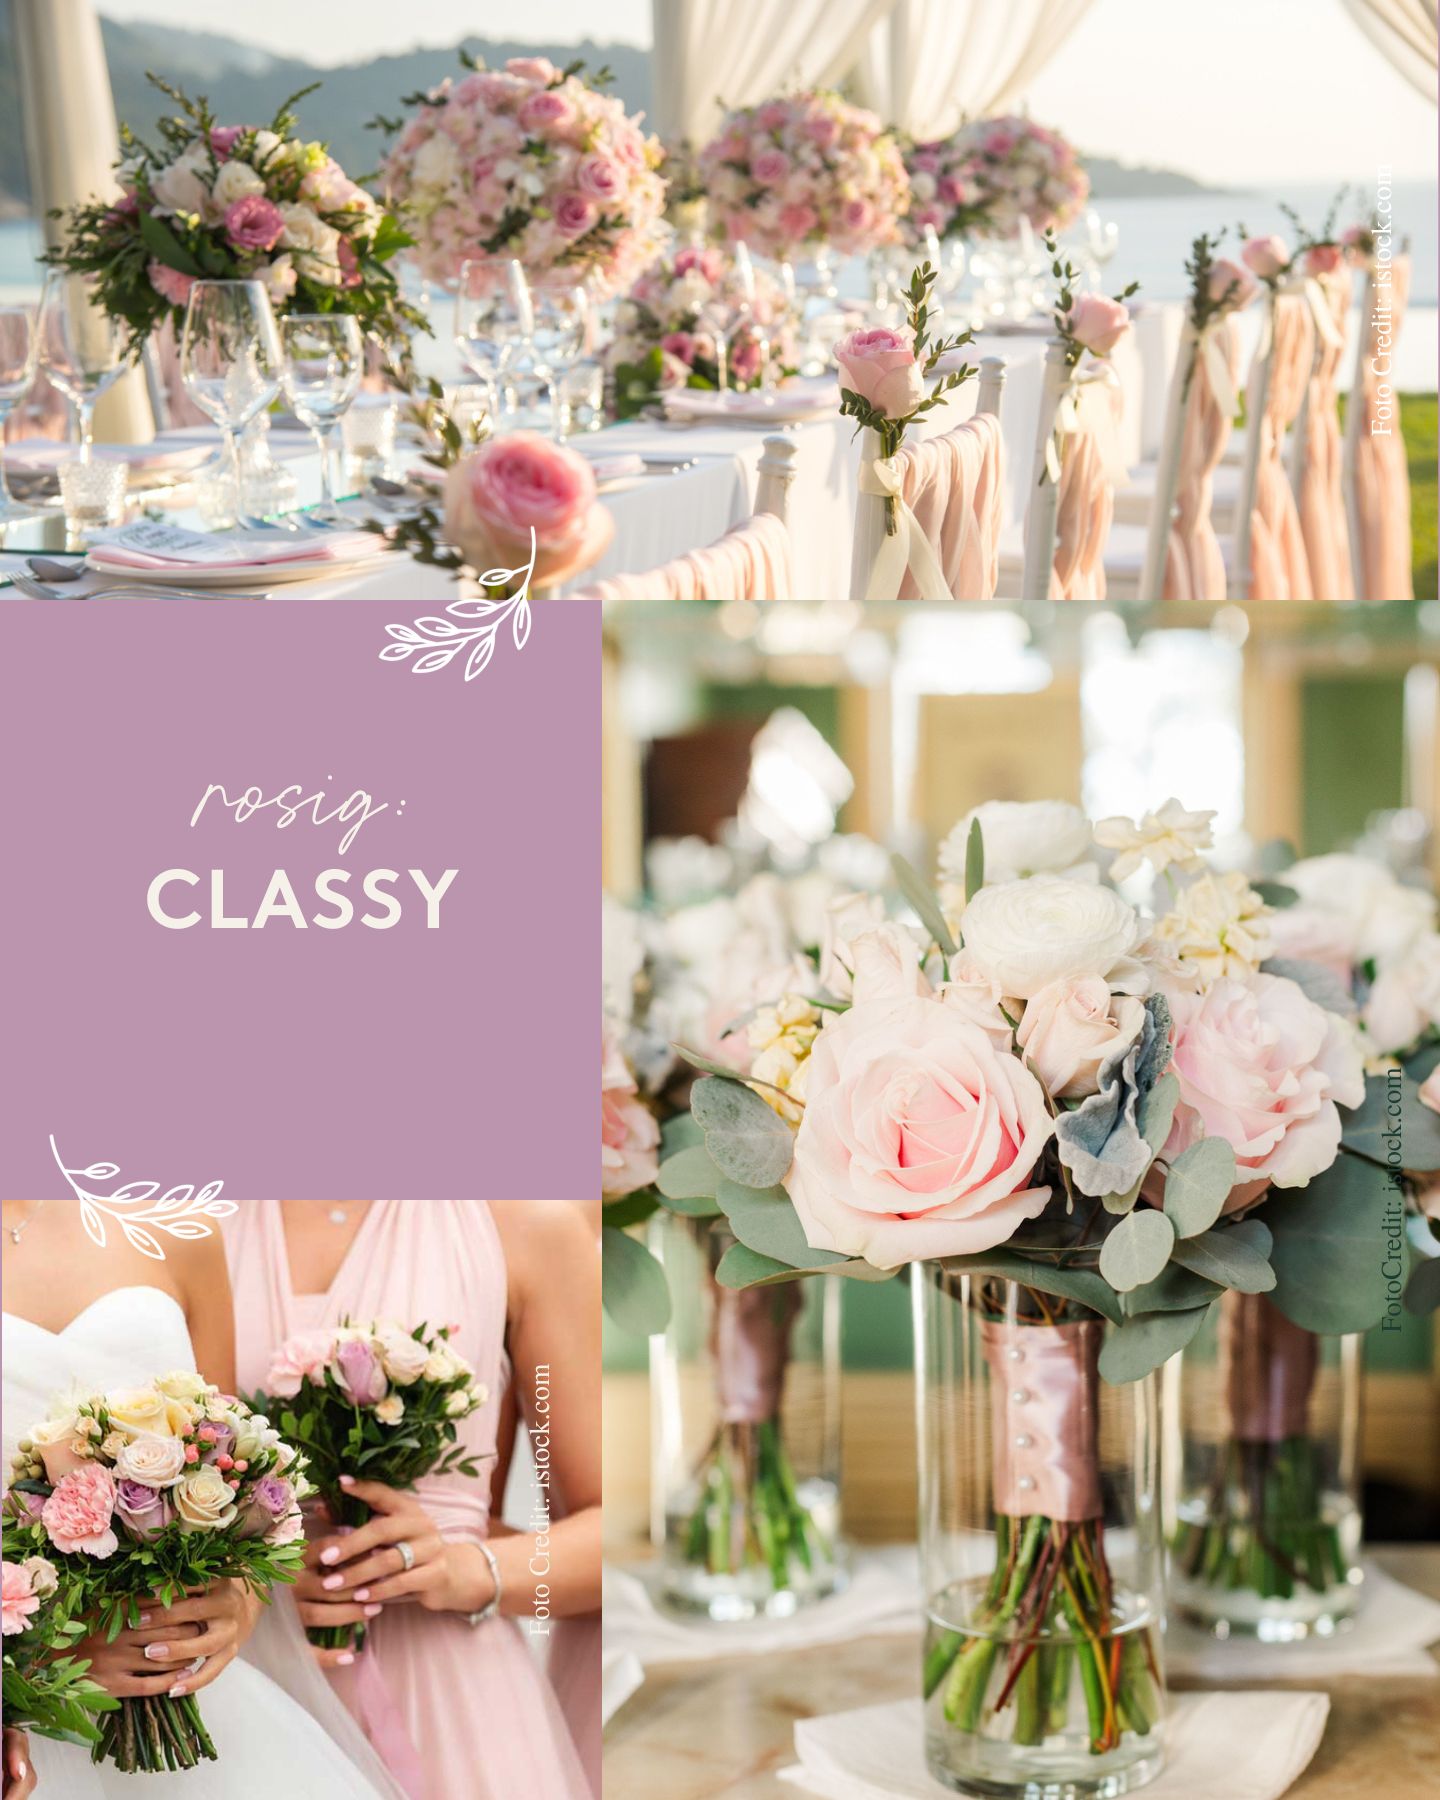 Klassische Hochzeit - Collage von Blumenarrangements